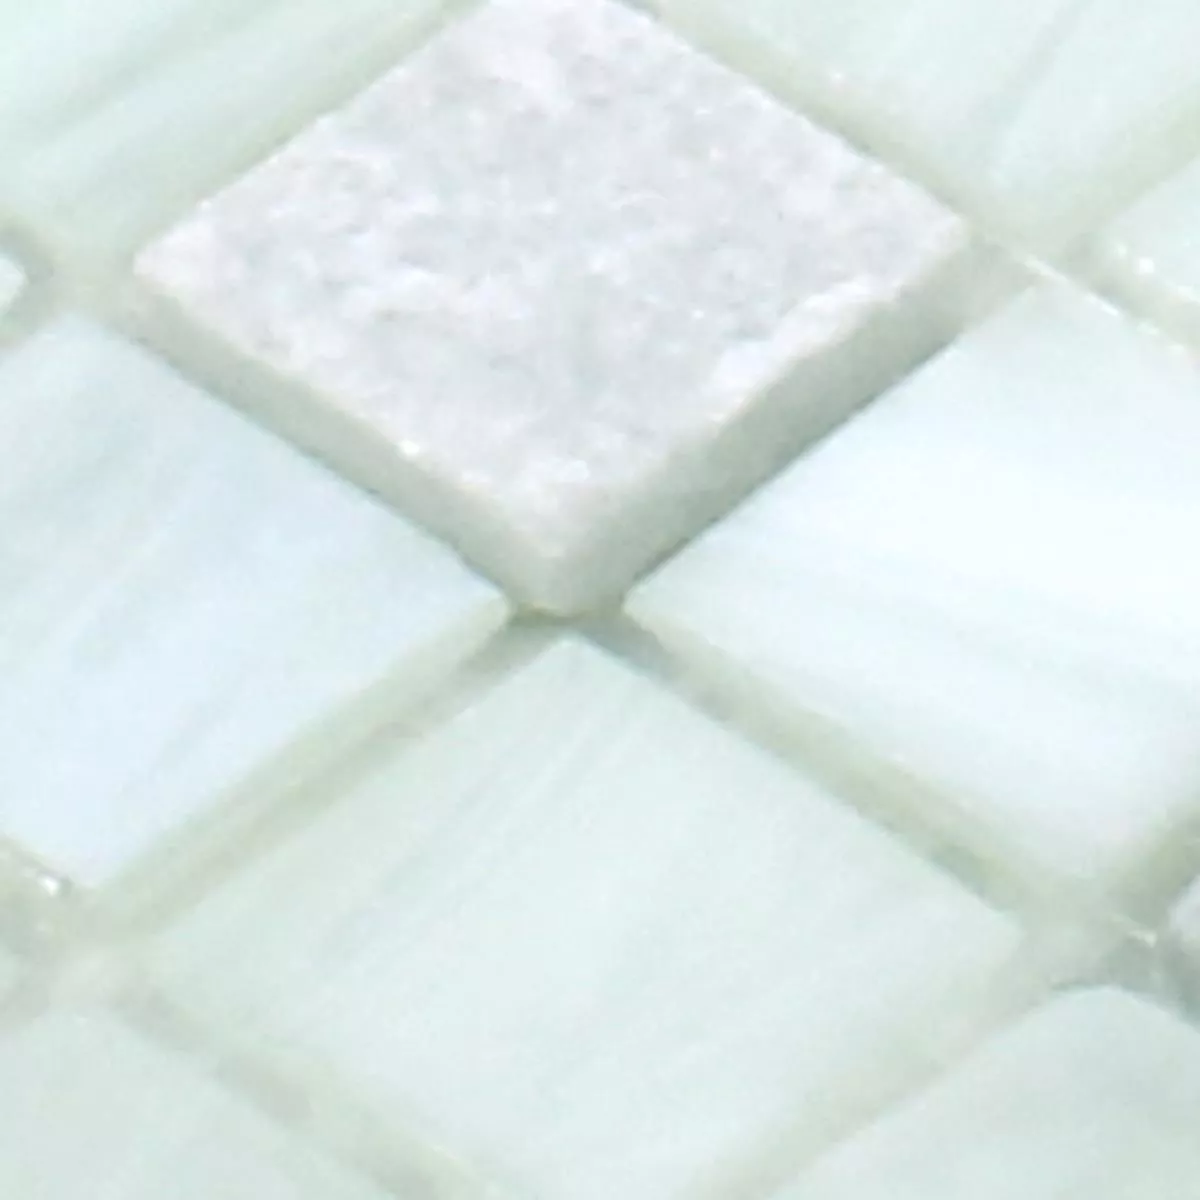 Sample Glass Natural Stone Mosaic Daily Rush White Cream